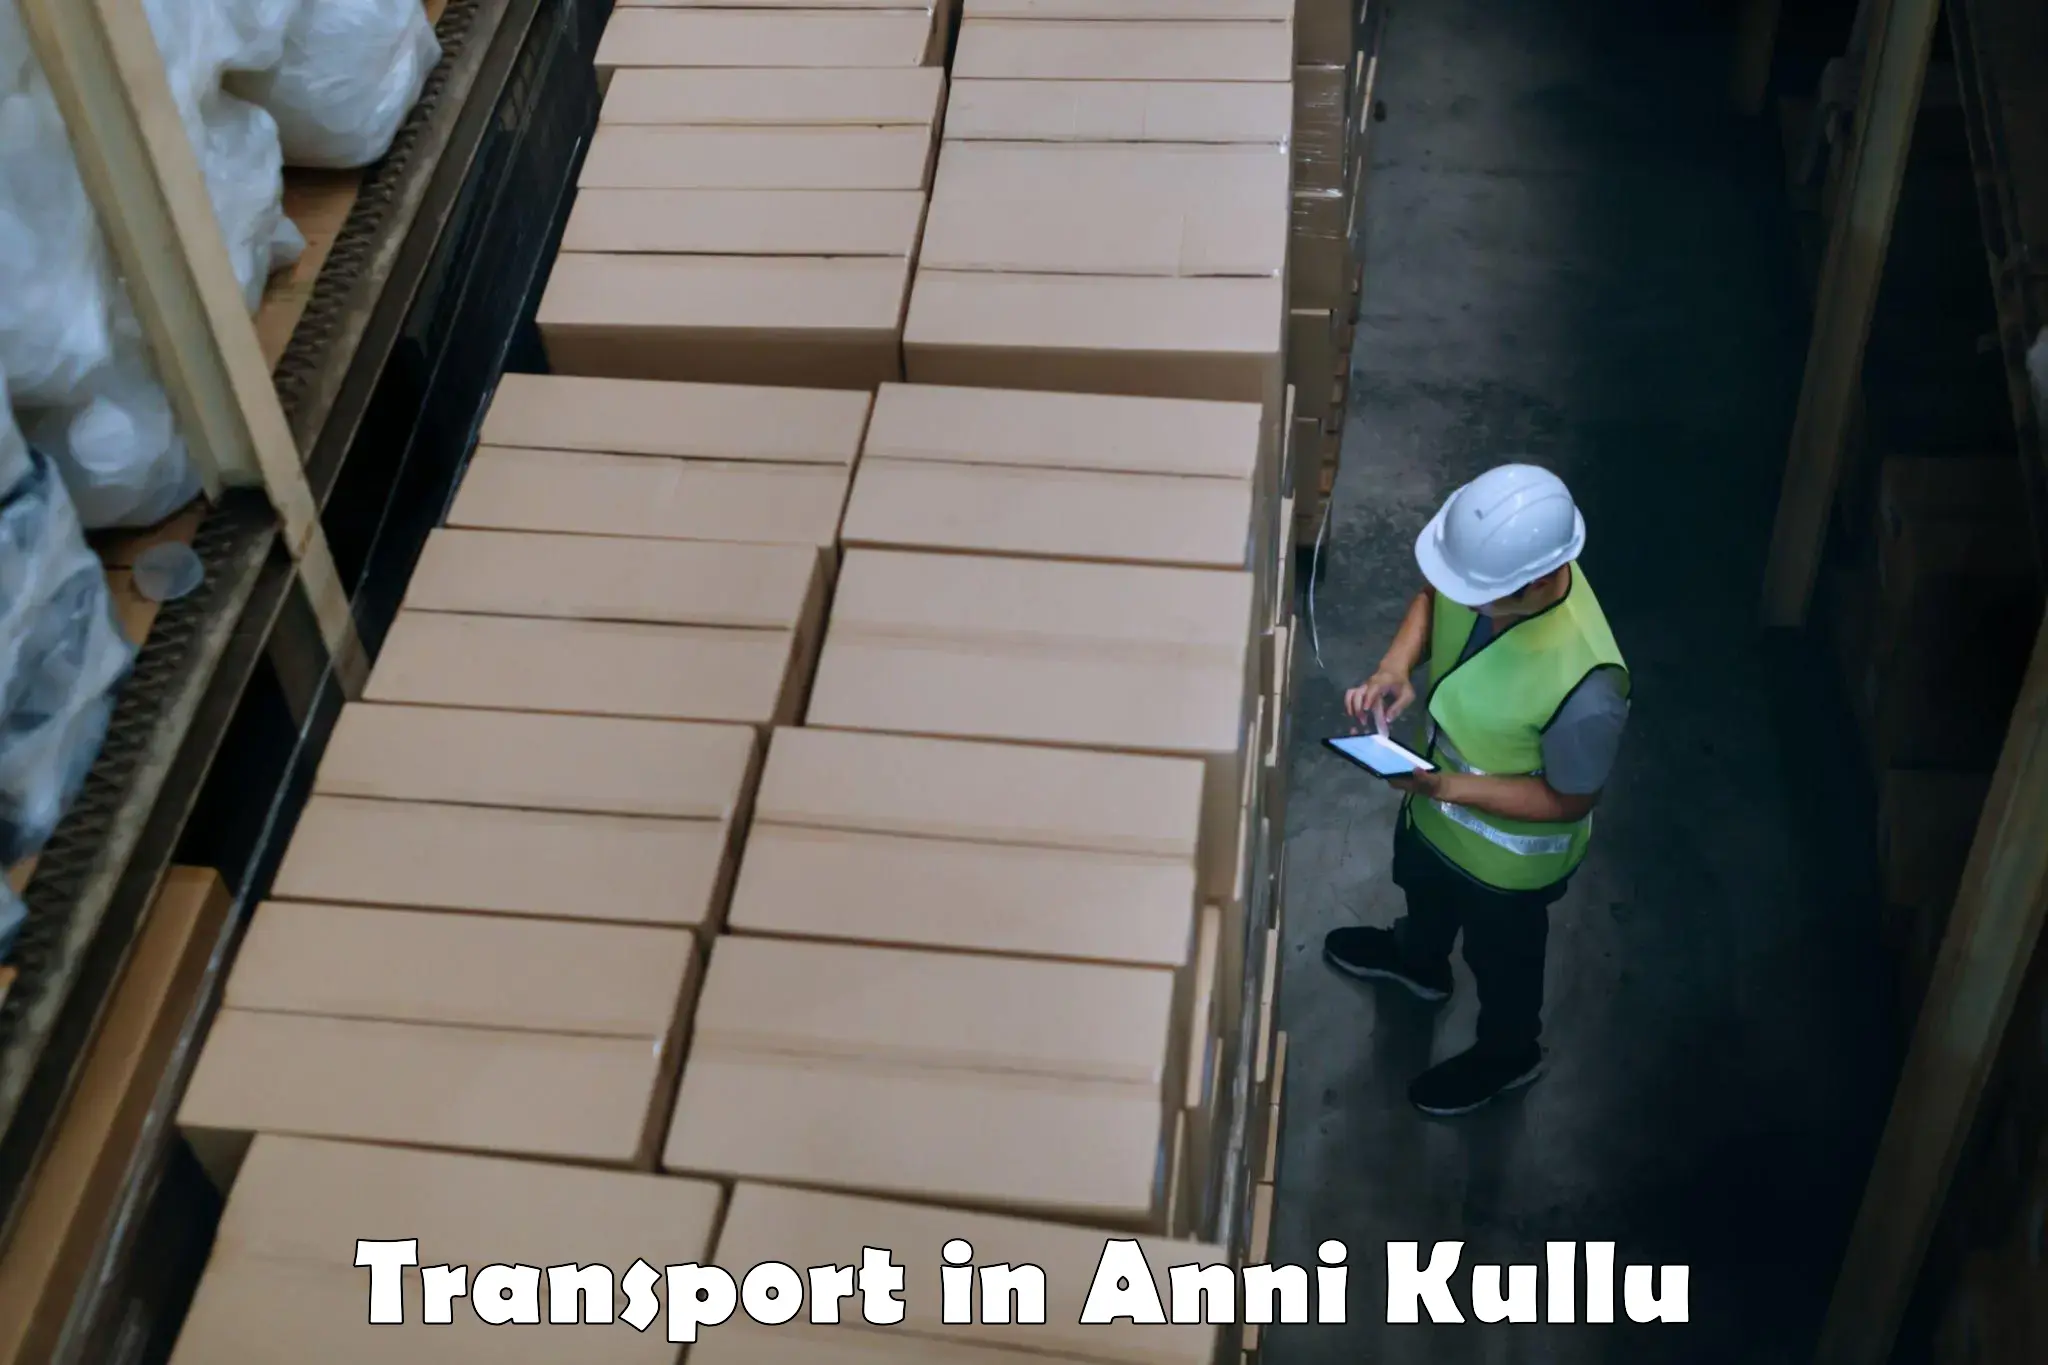 Cargo transport services in Anni Kullu